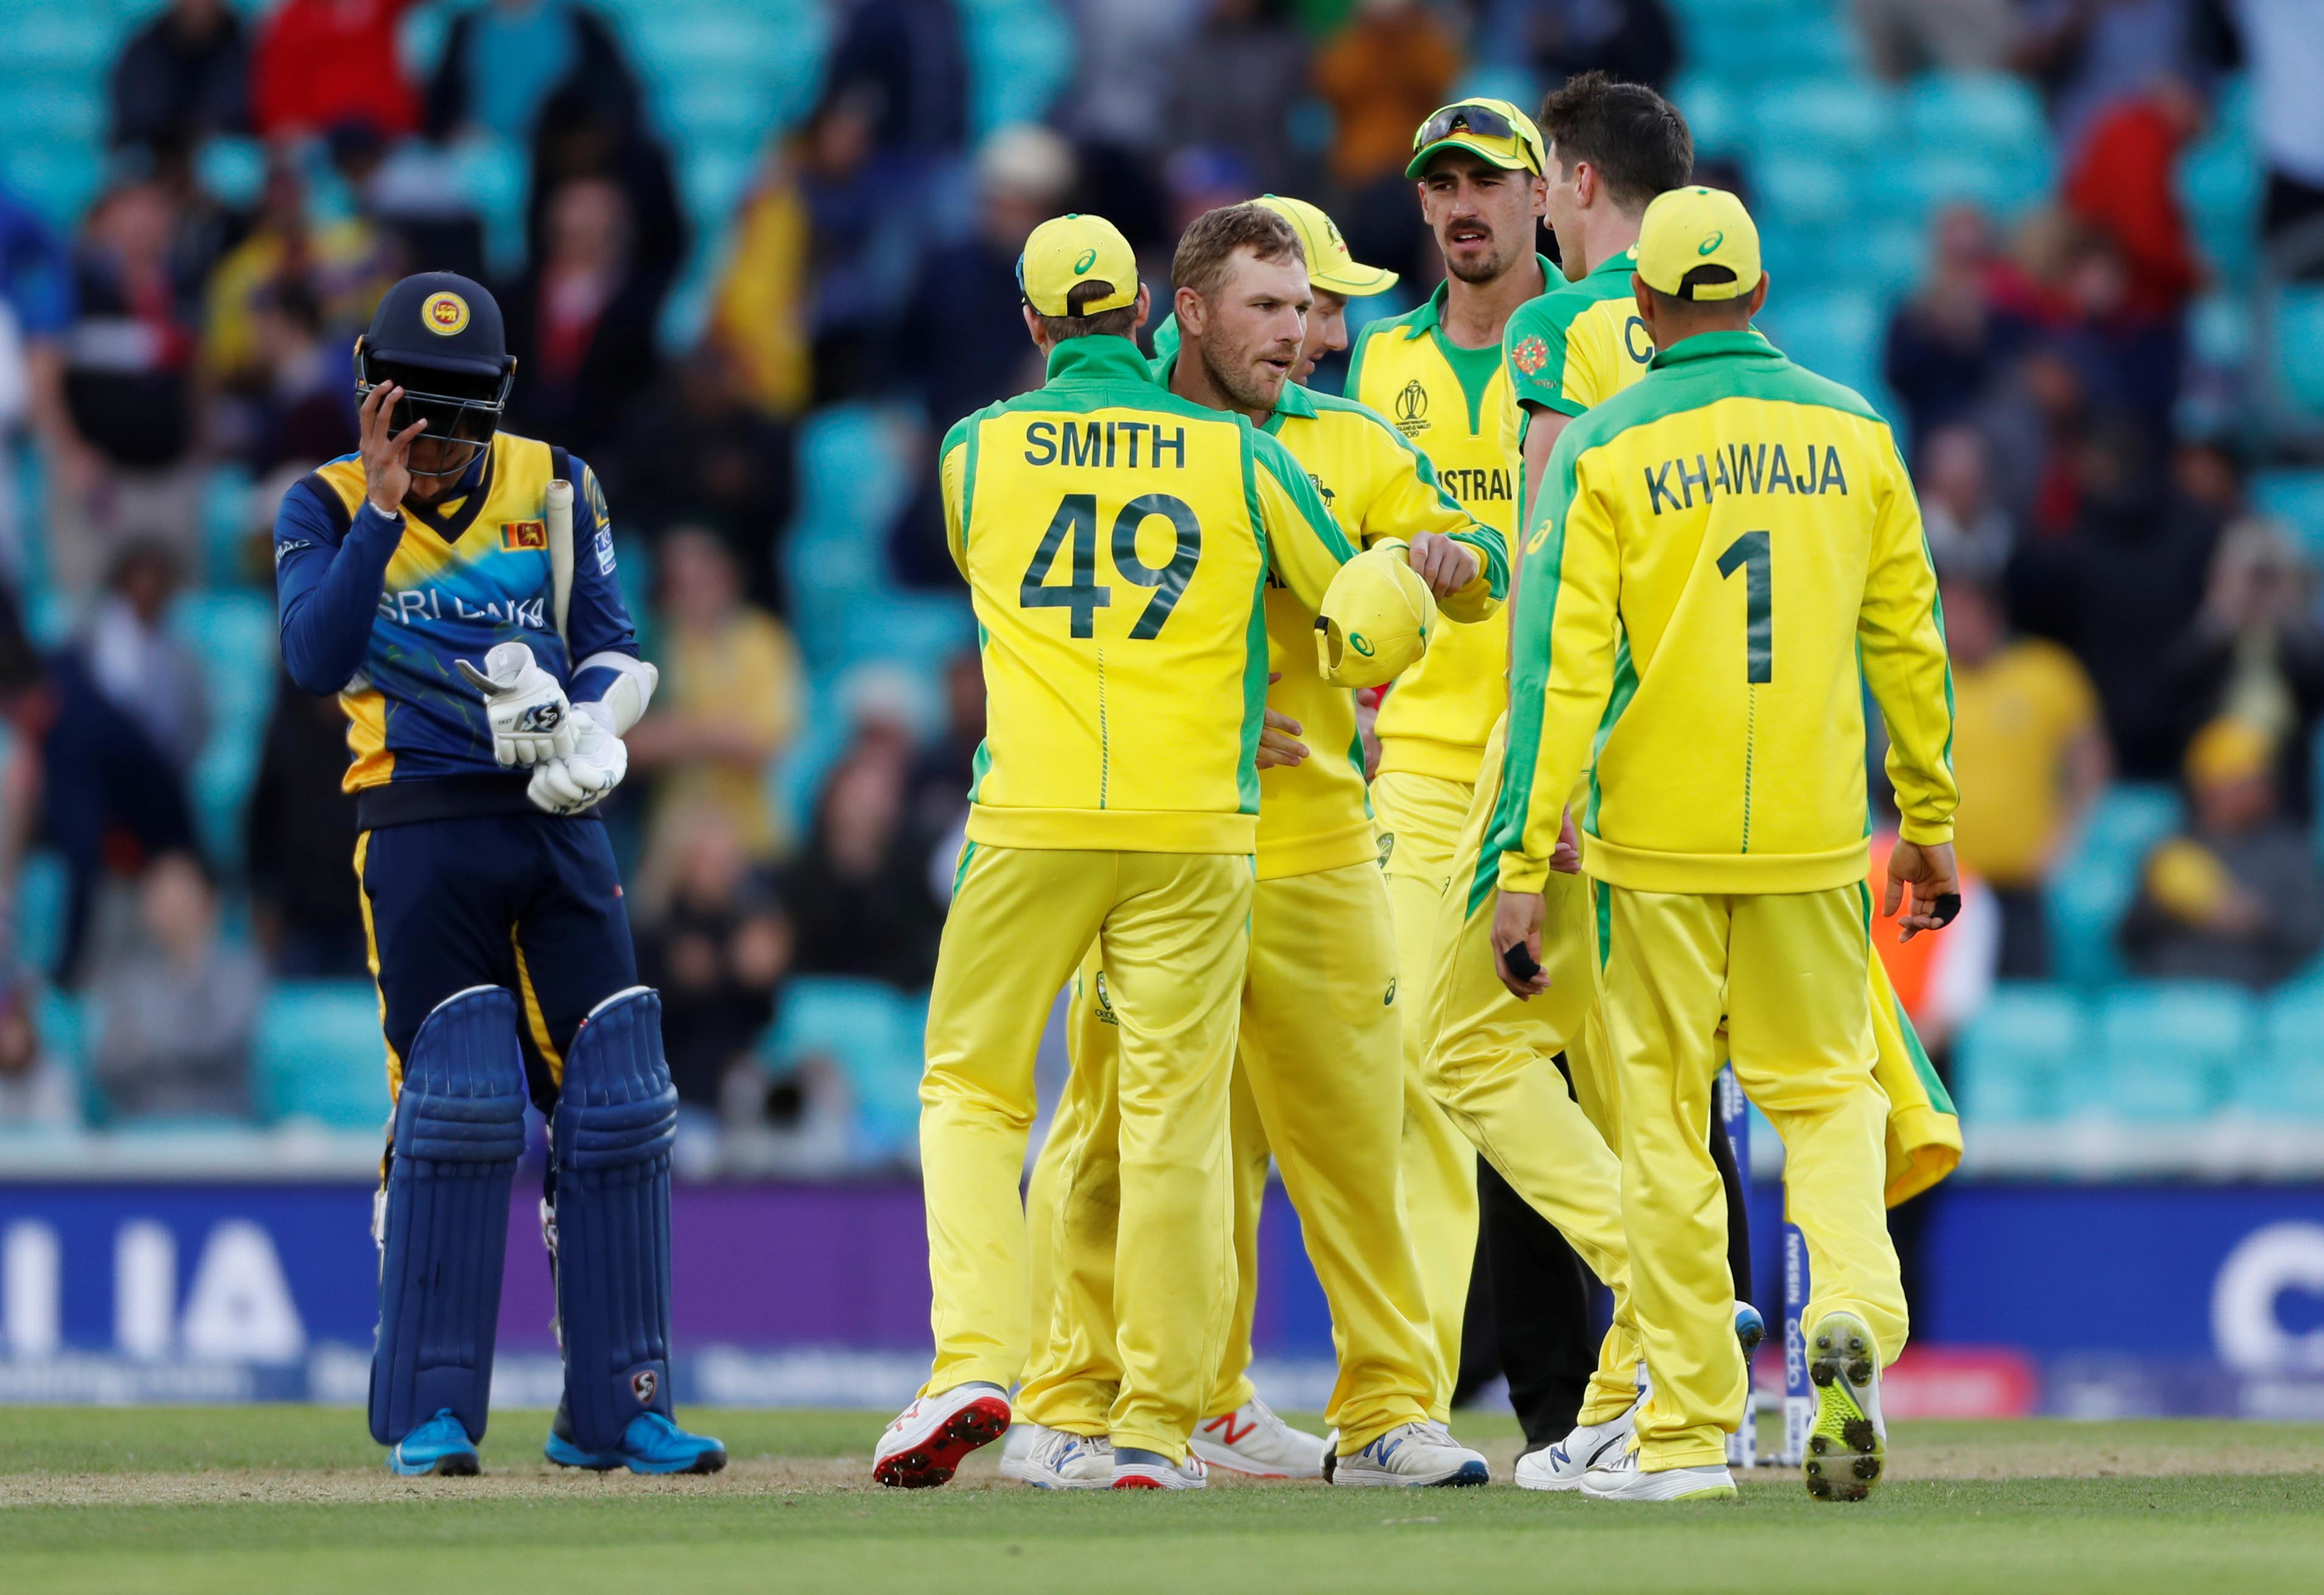 Sri Lanka vs Australia Live Cricket Score, World Cup 2019 In Pictures - SL vs AUS Live ...